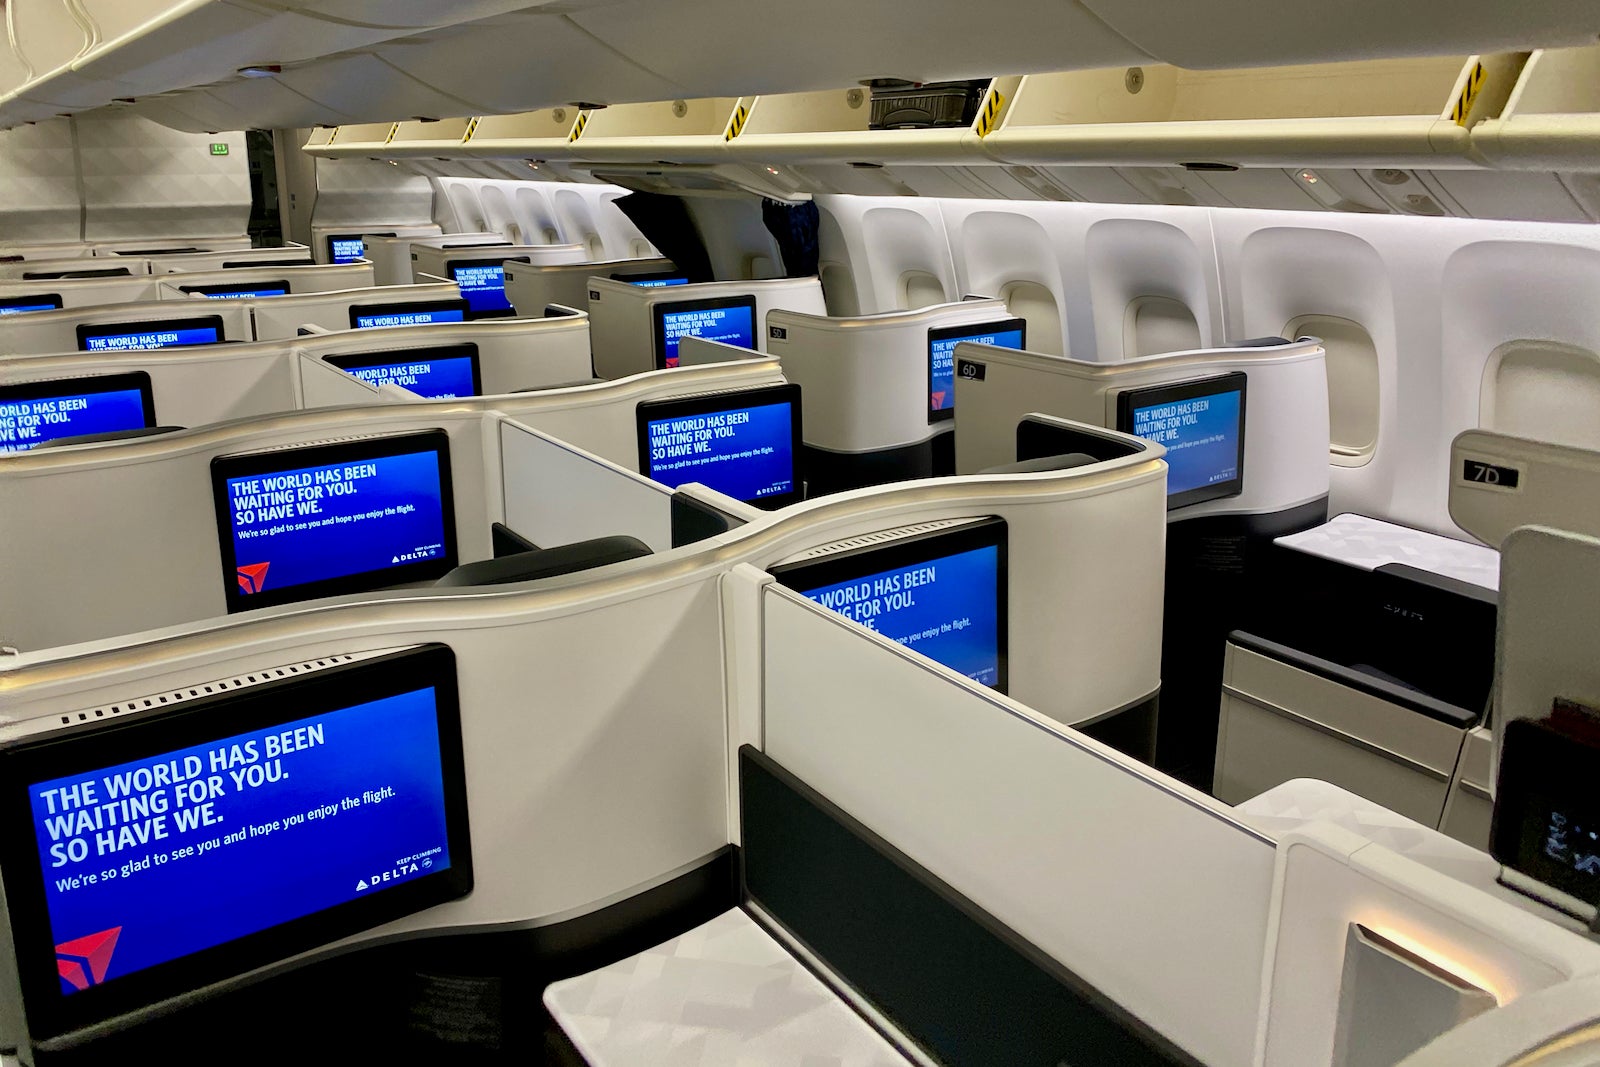 Delta 767 business class suites